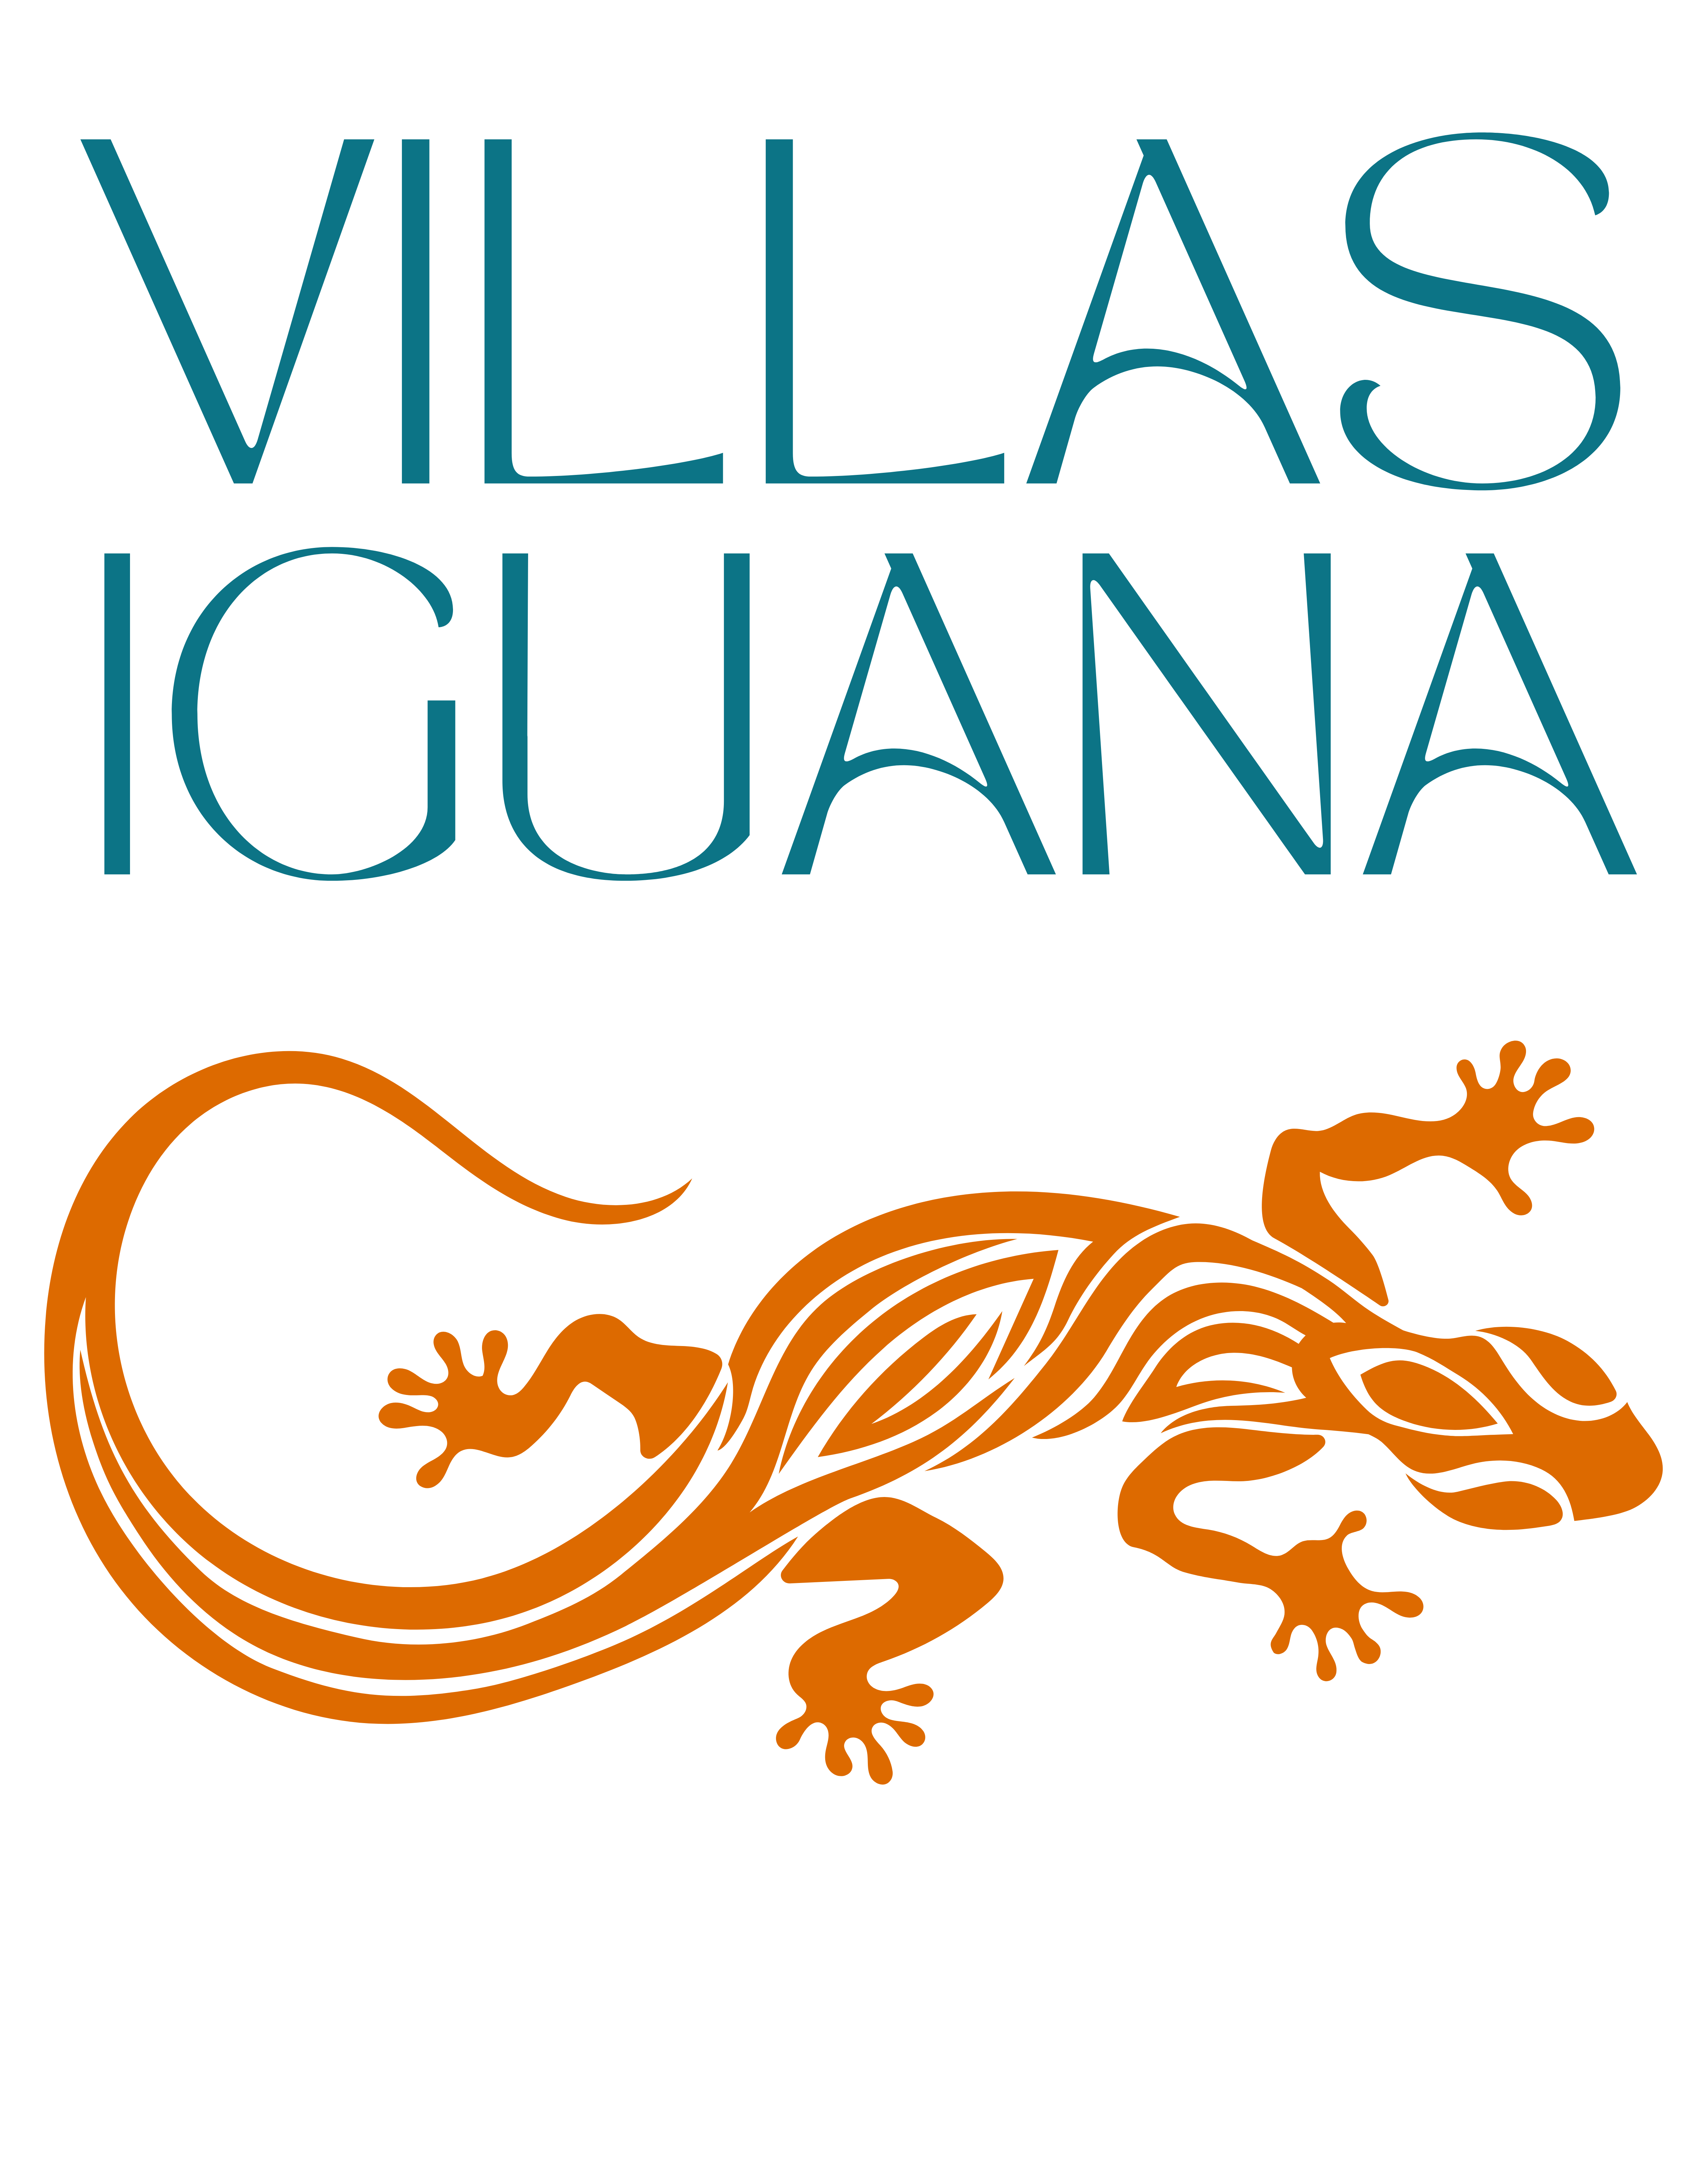 Villas Iguana